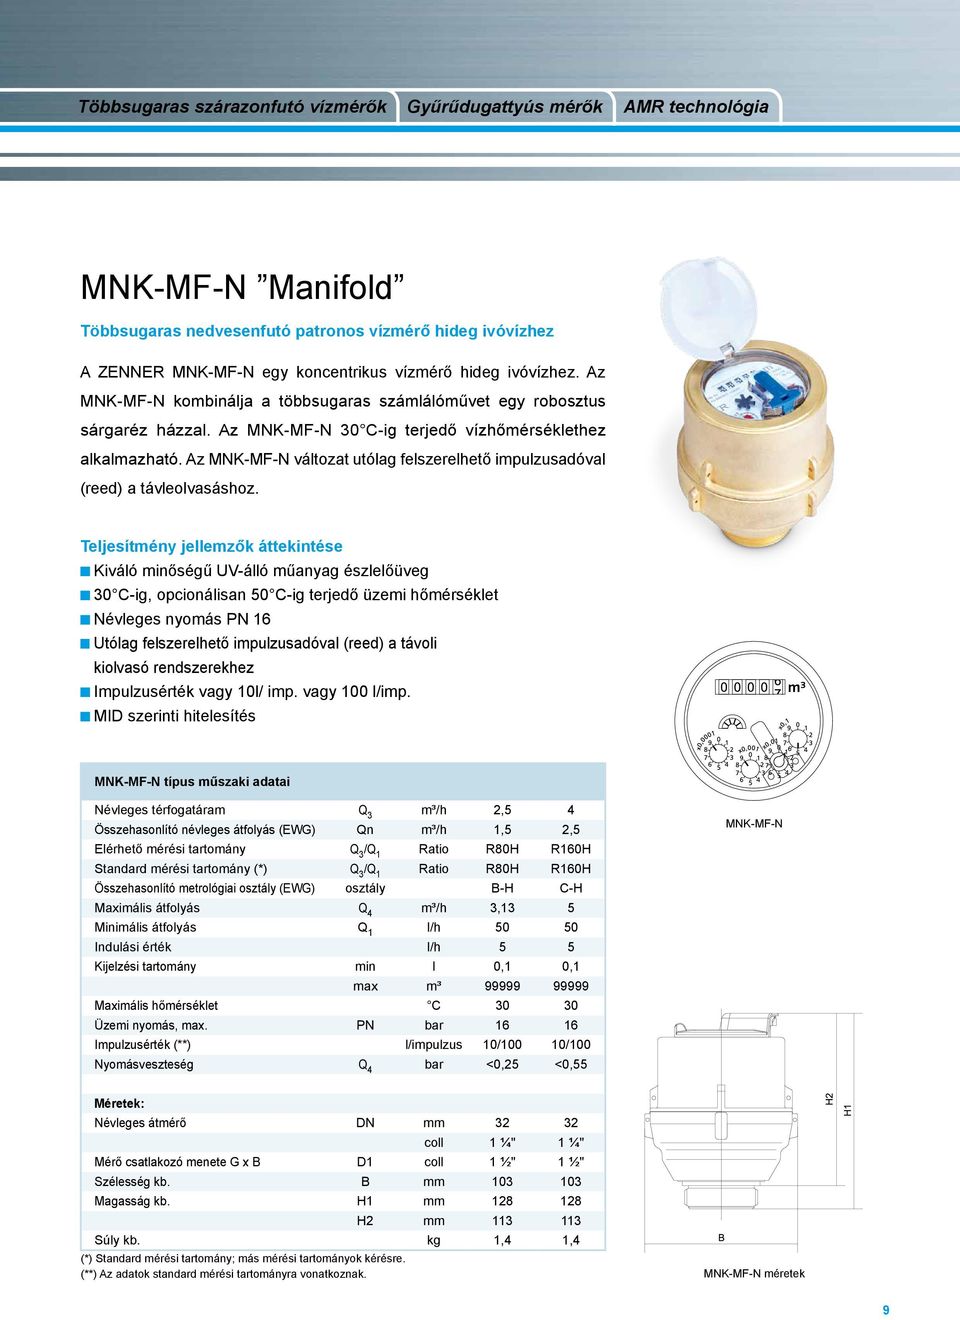 Az MNK-MF-N változat utólag felszerelhető impulzusadóval (reed) a távleolvasáshoz.